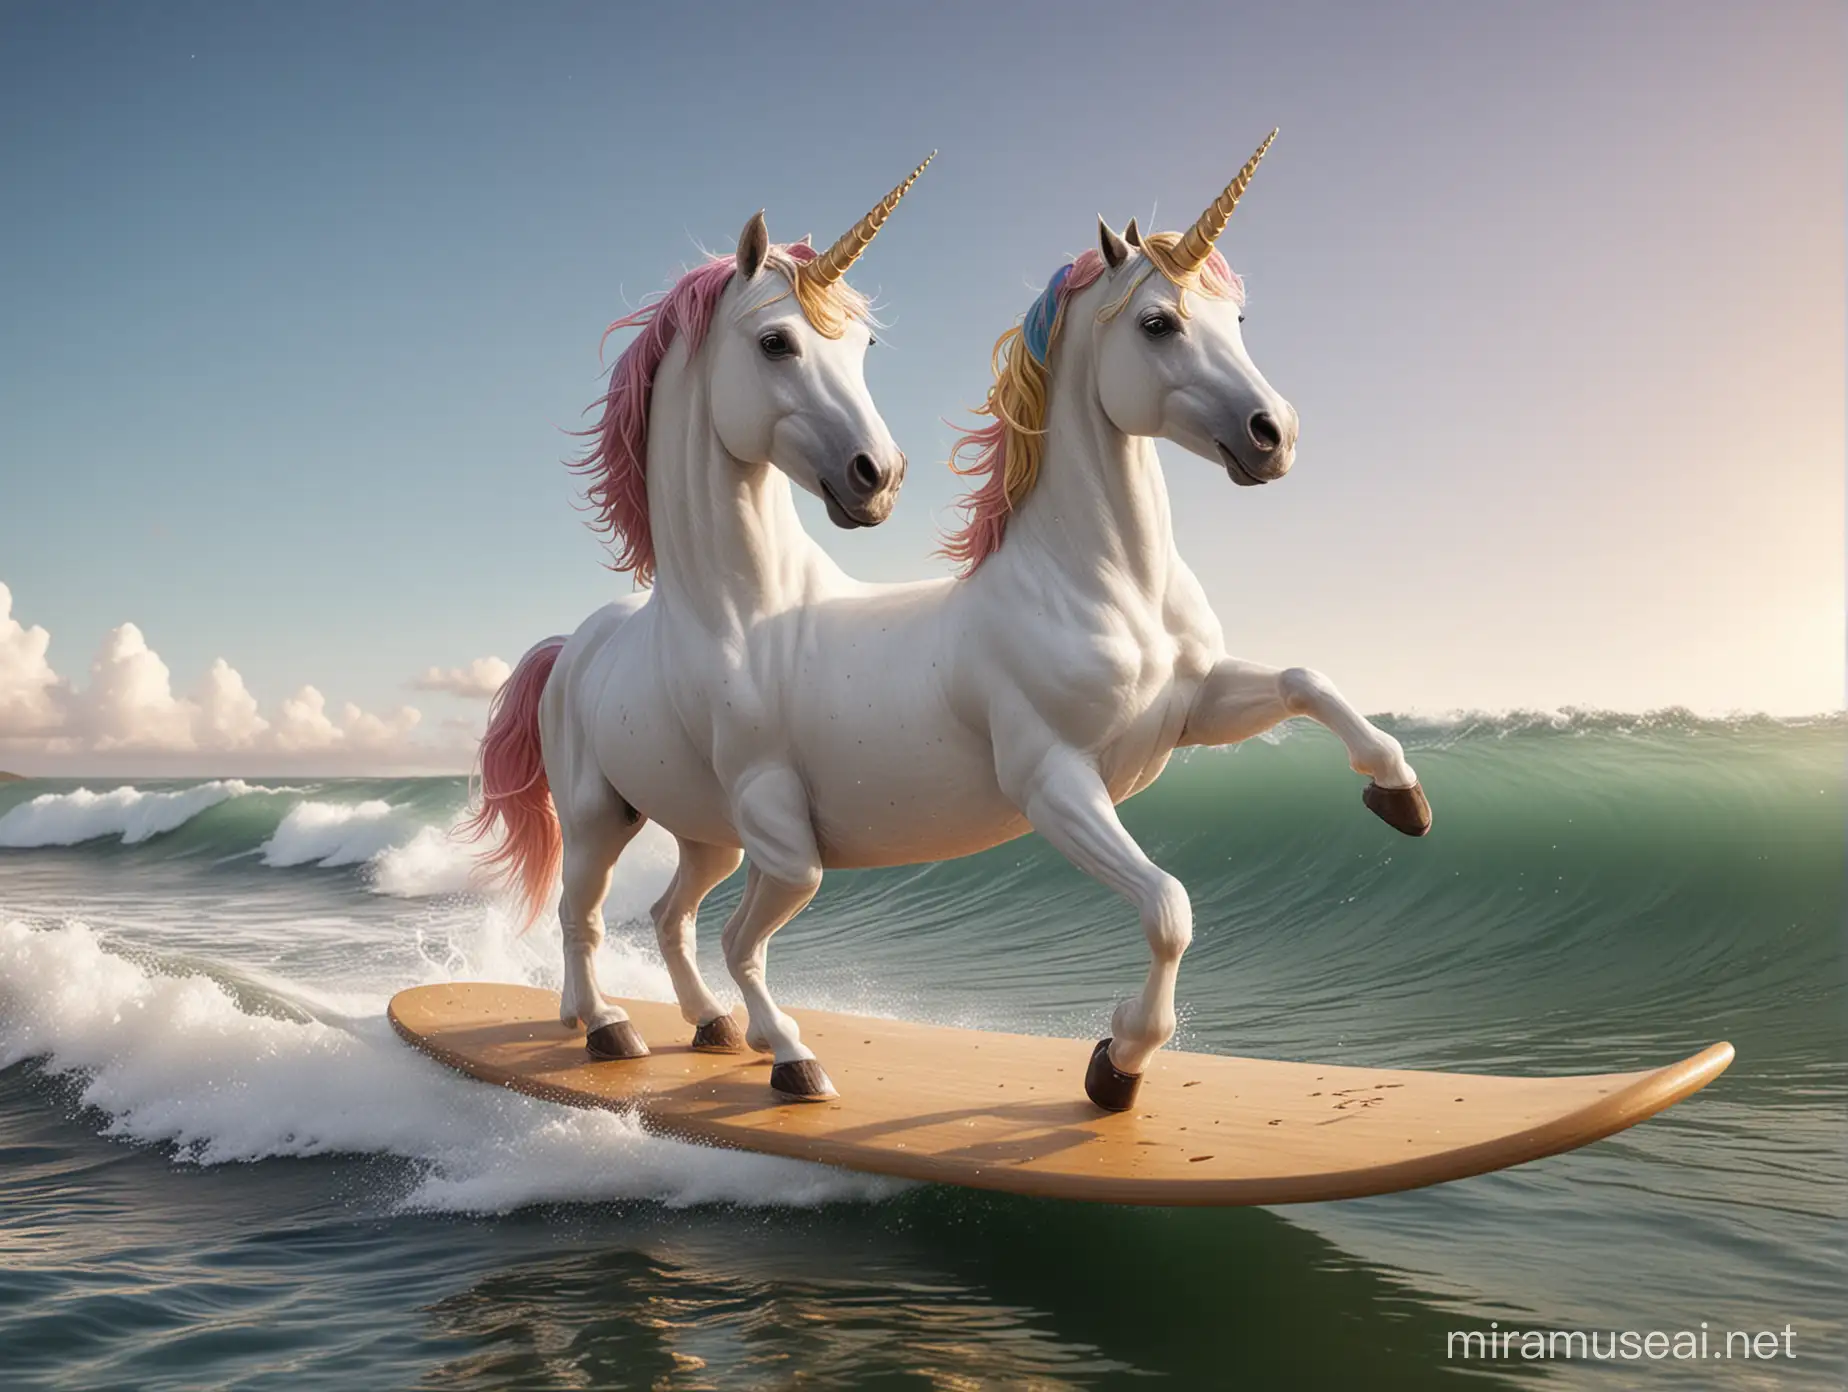 unicorn as an astroanut surfing on a board